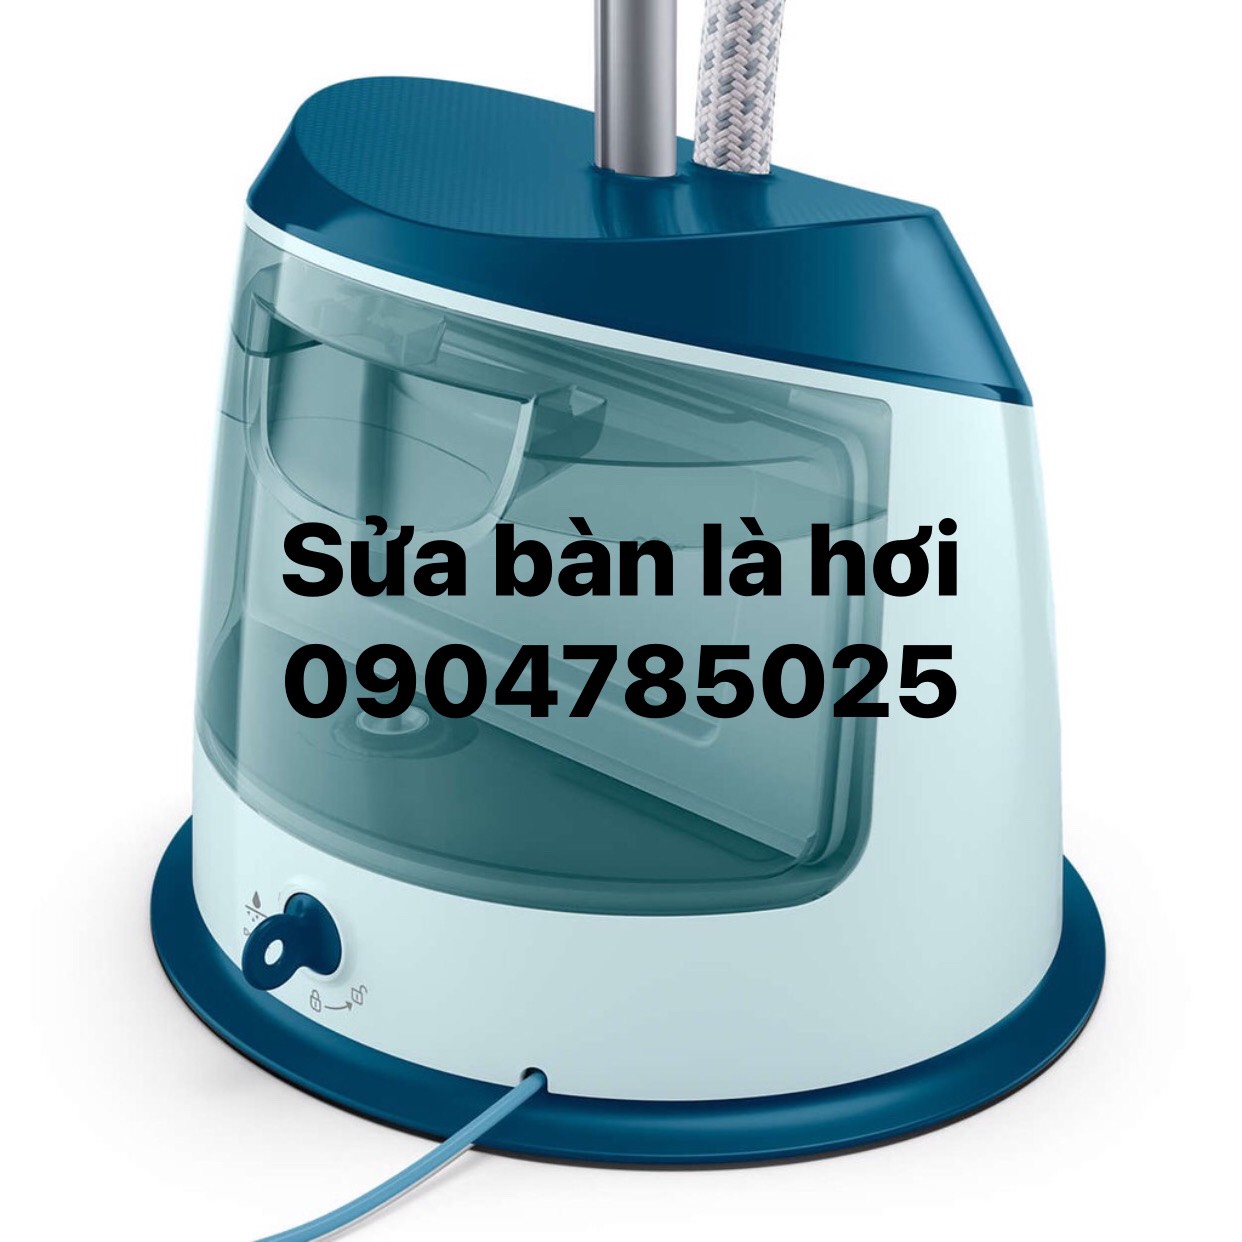 Sửa bàn ủi hơi nước tại Hà Nội, với các hãng Philips, Tefal, Bluestone, Panasonic, Electrolux, Bosch, sửa nhanh, giá rẻ